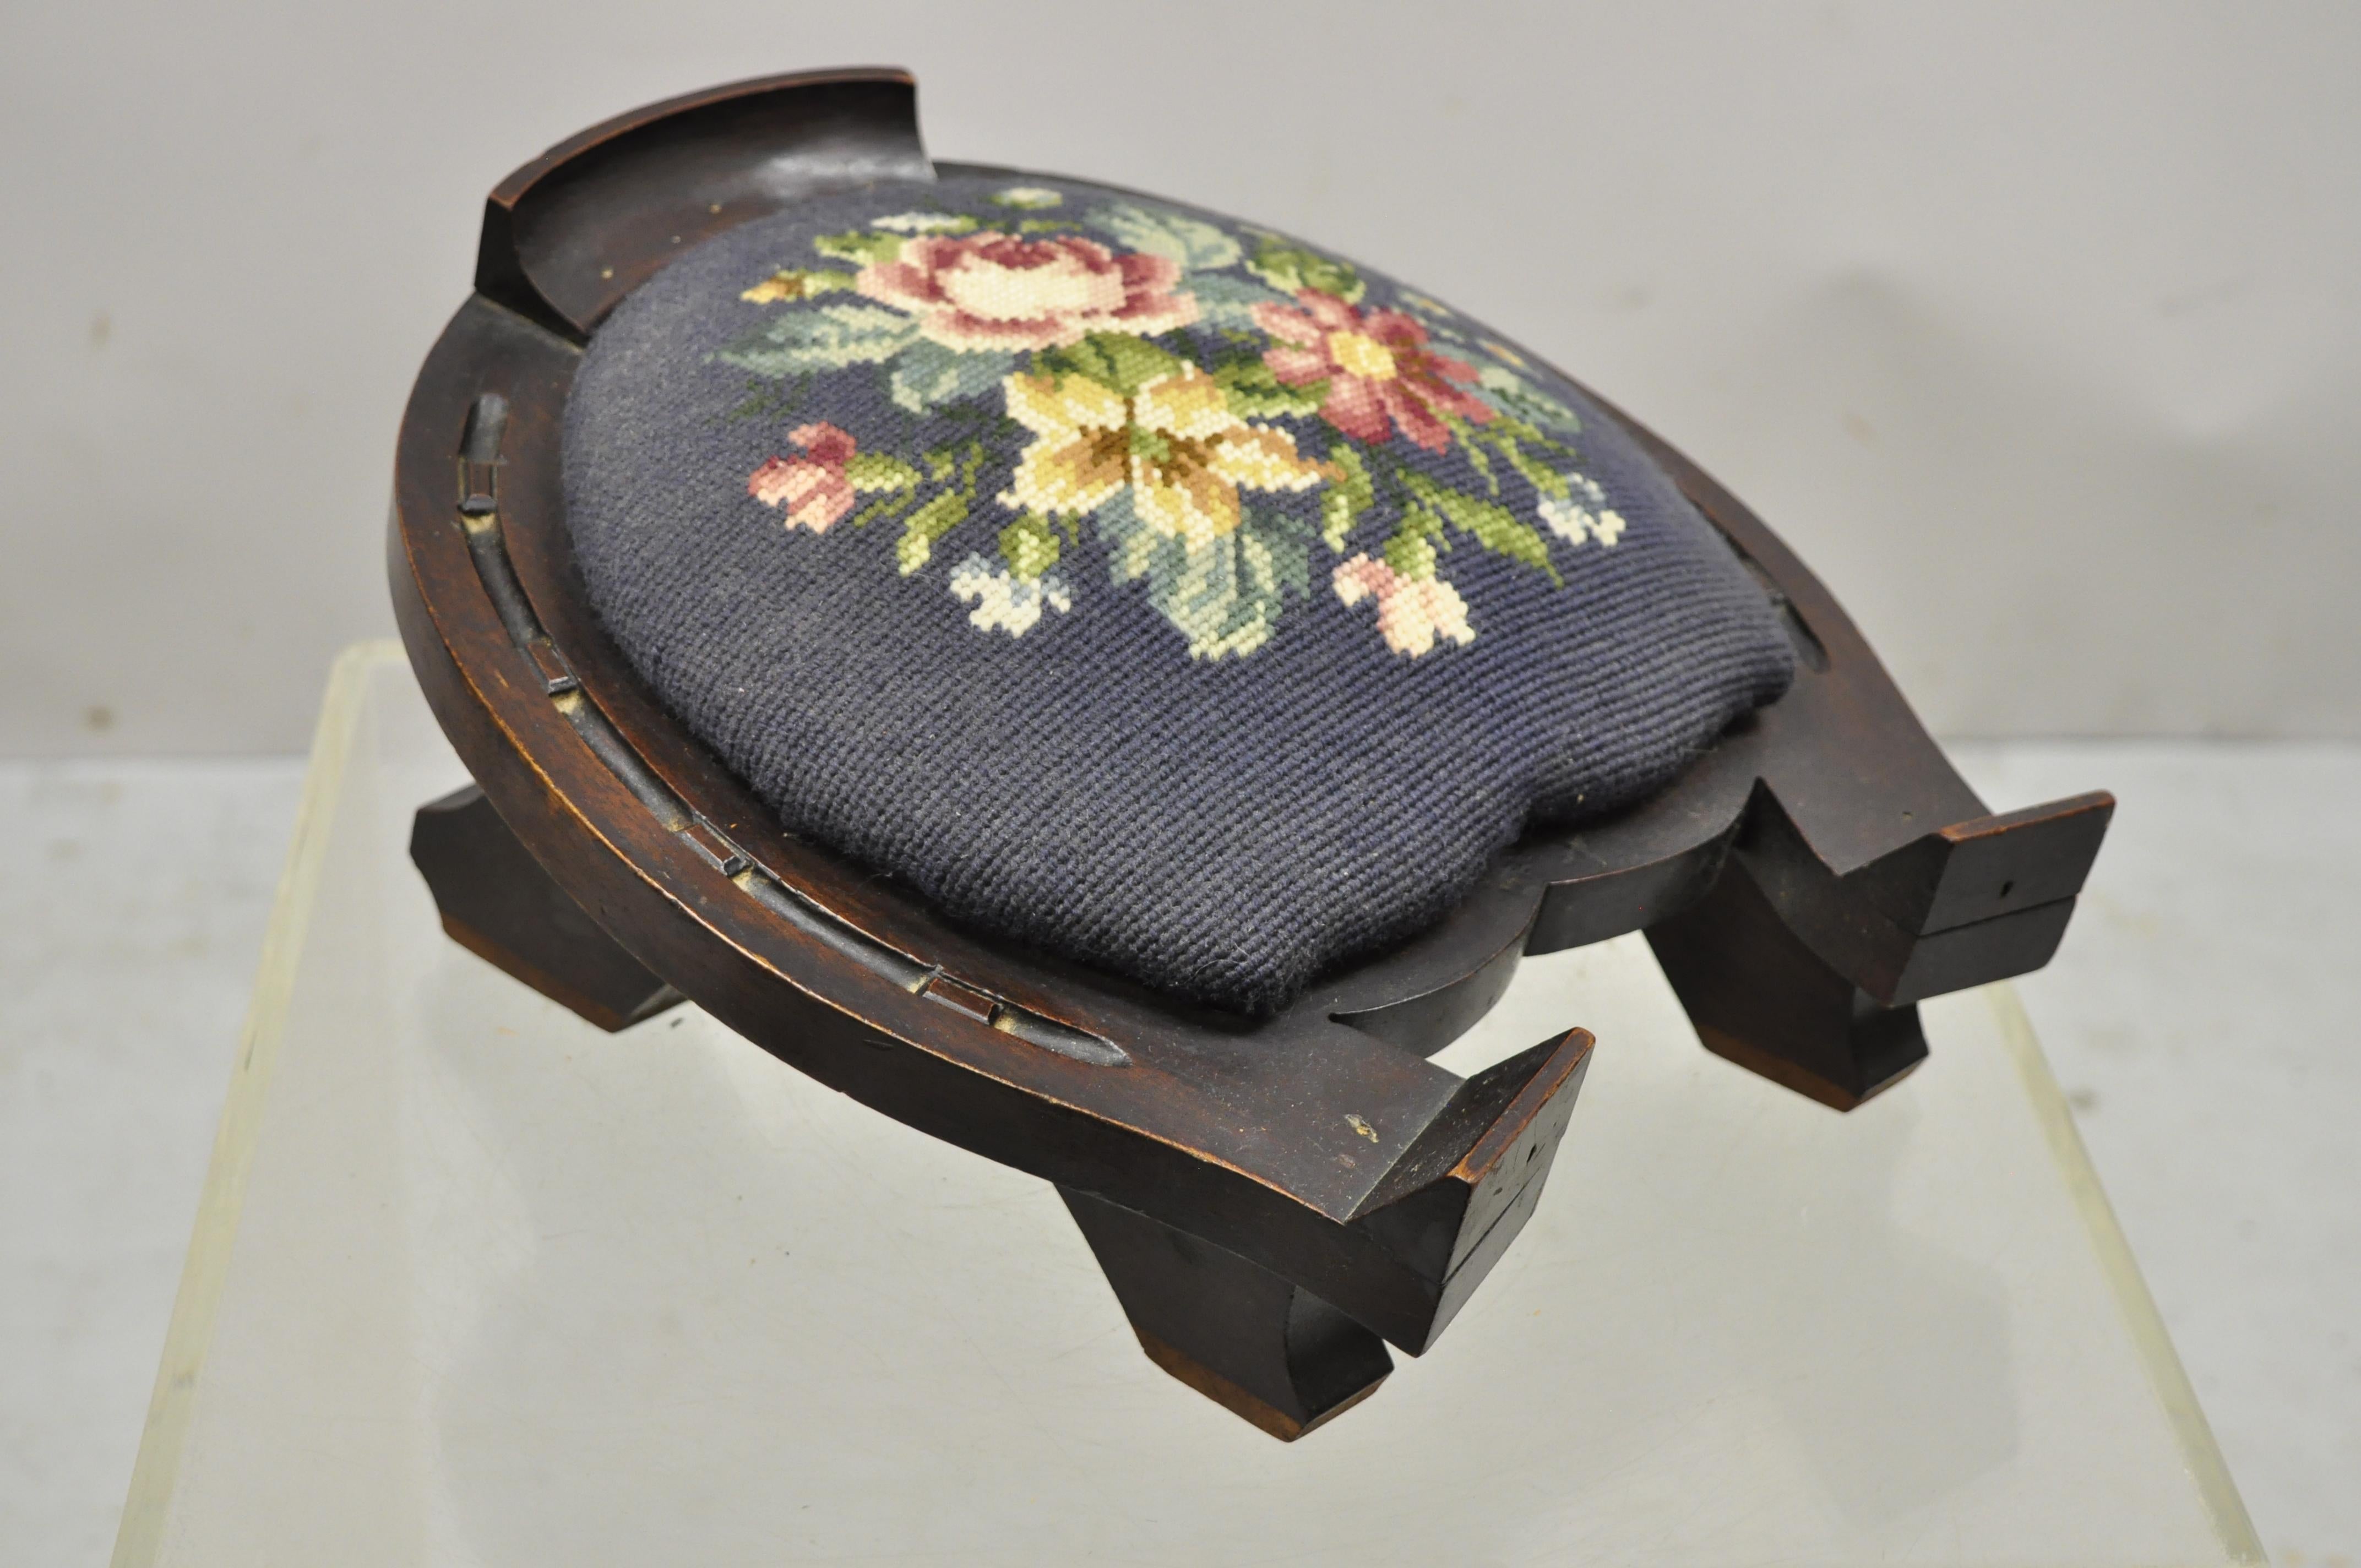 Tabouret de gouttière Victorien en acajou sculpté en forme de fer à cheval pouf pouf ottoman. L'article présente un siège floral brodé, un cadre en bois massif, des détails joliment sculptés, un très bel article ancien. Circa 1900s. Mesures : 7